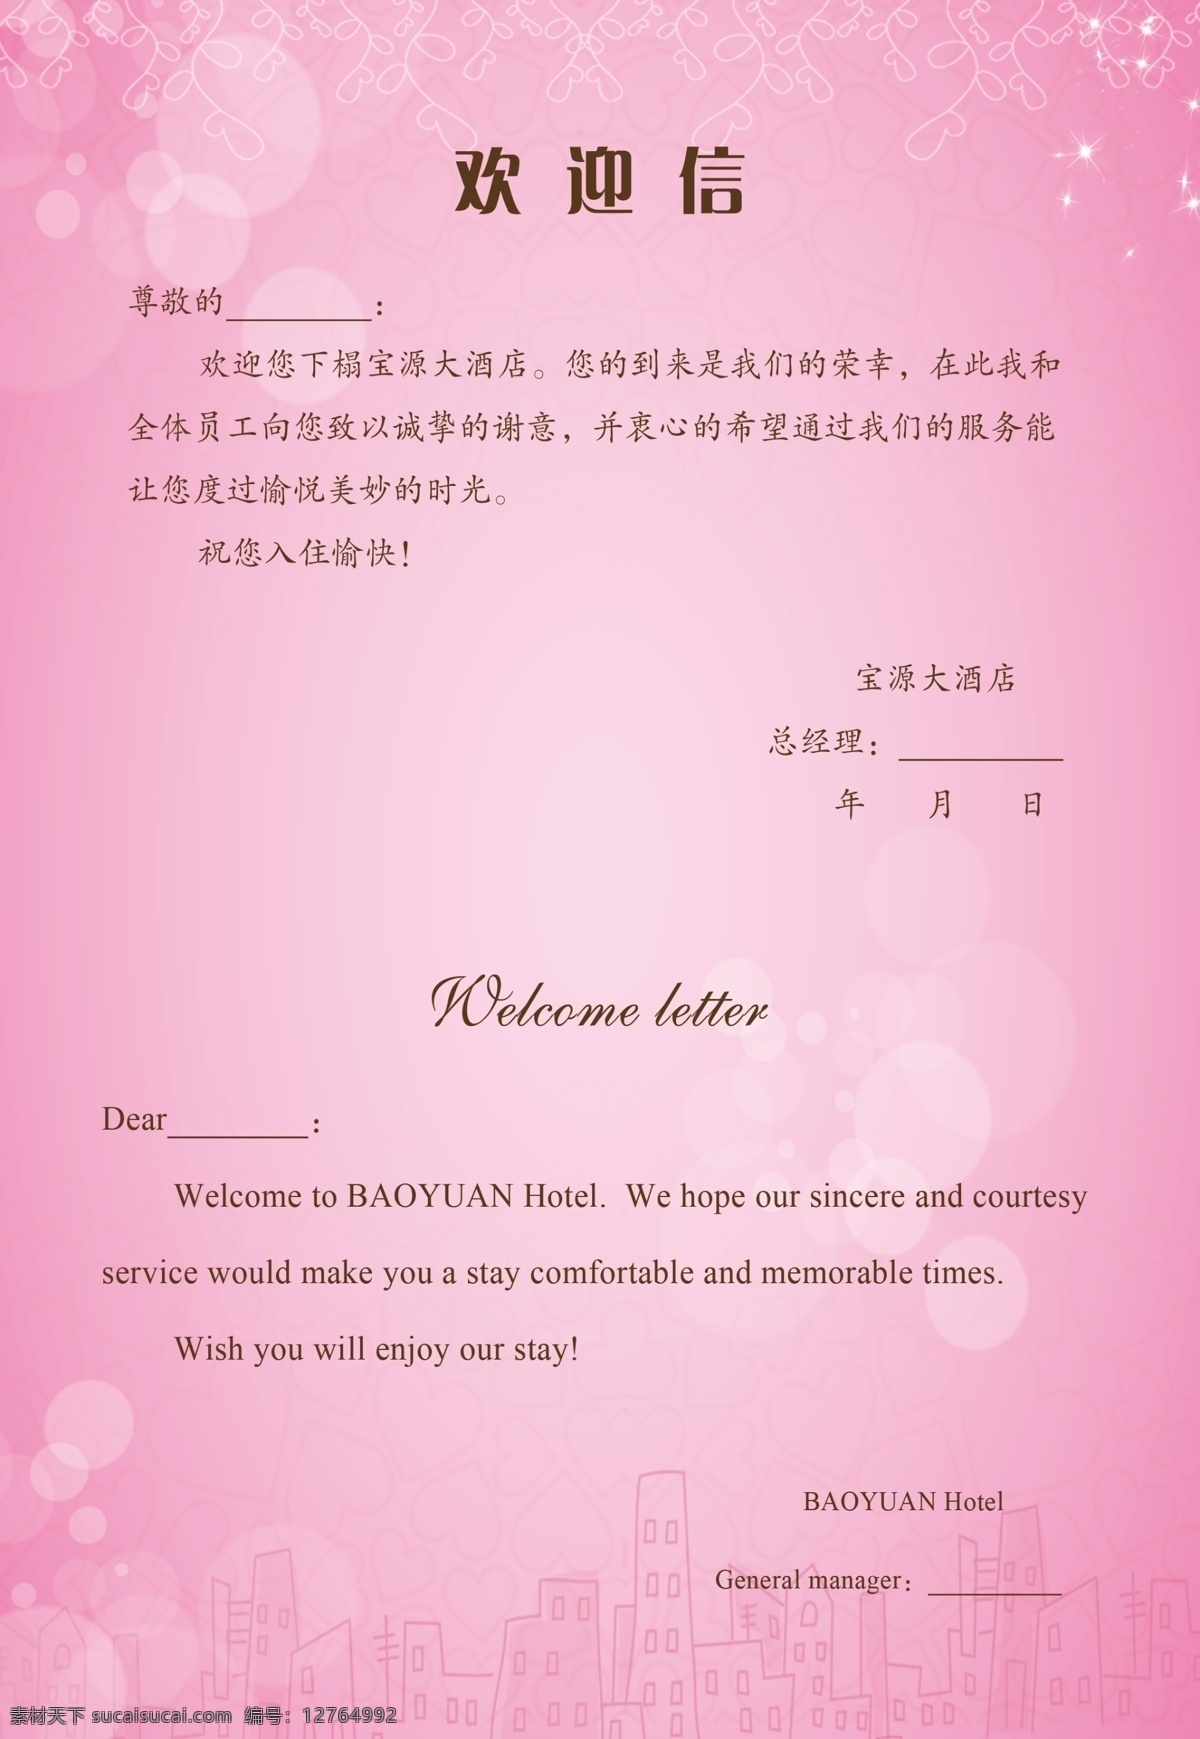 酒店卡片 欢迎信 温馨提示 背景 粉色 花边 宣传版面 分层